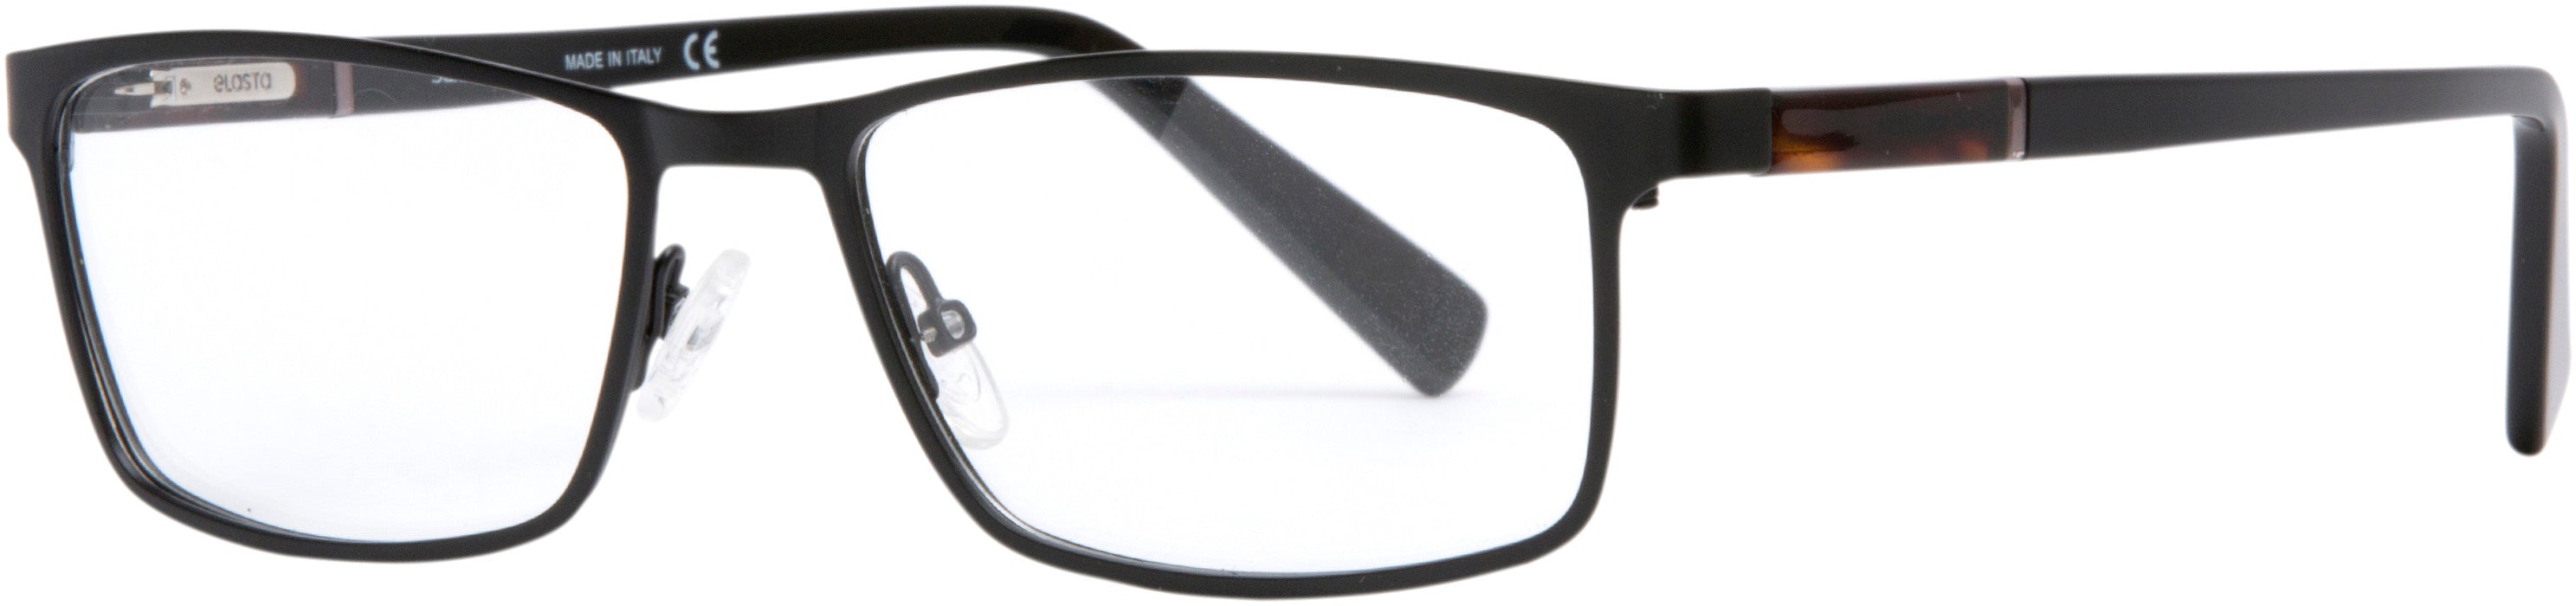  Elasta 7224 Rectangular Eyeglasses 0003-0003  Matte Black (00 Demo Lens)